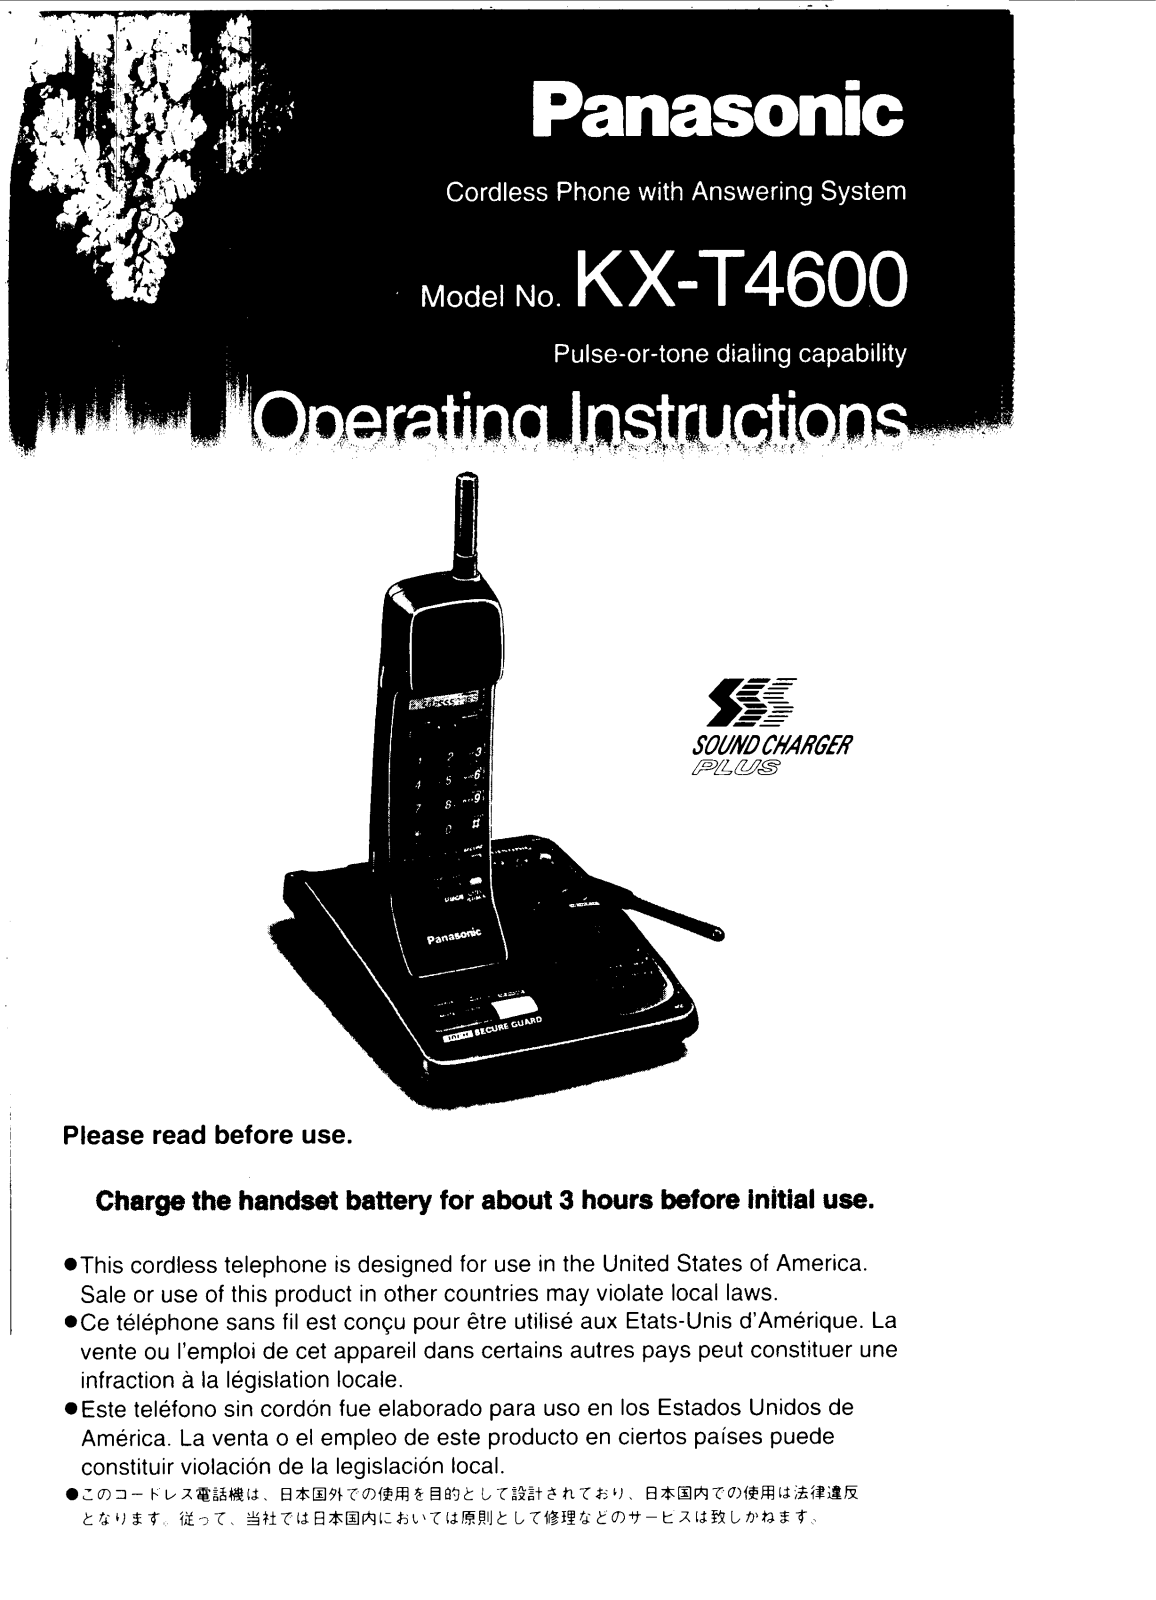 Panasonic kx-t4600 Operation Manual